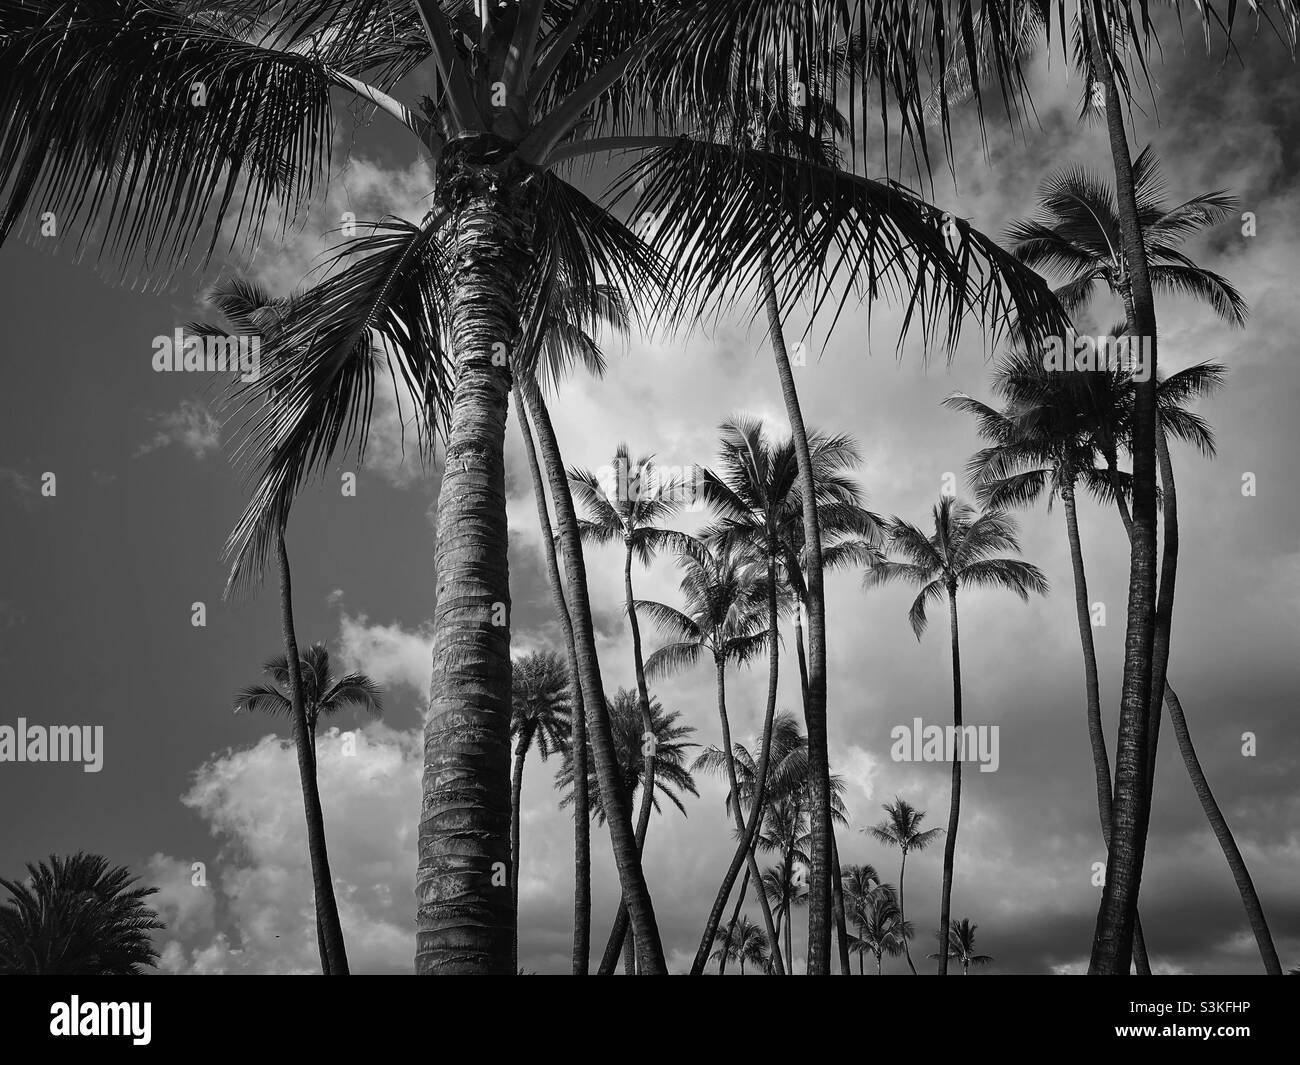 palmier à noix de coco en noir et blanc Banque D'Images